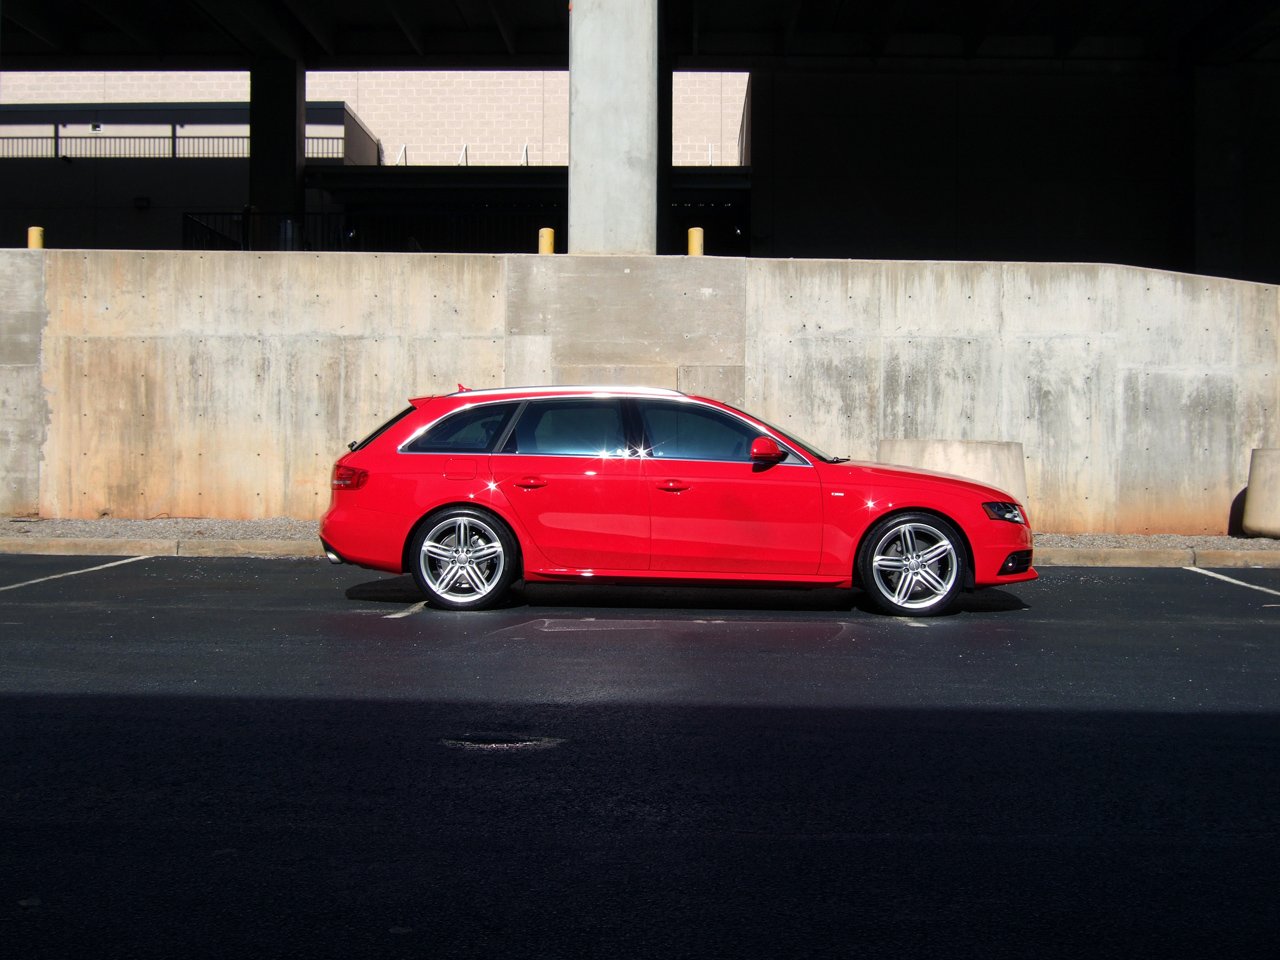 Audi A4 2.0T Avant B8 specs, 0-60, quarter mile, lap times 